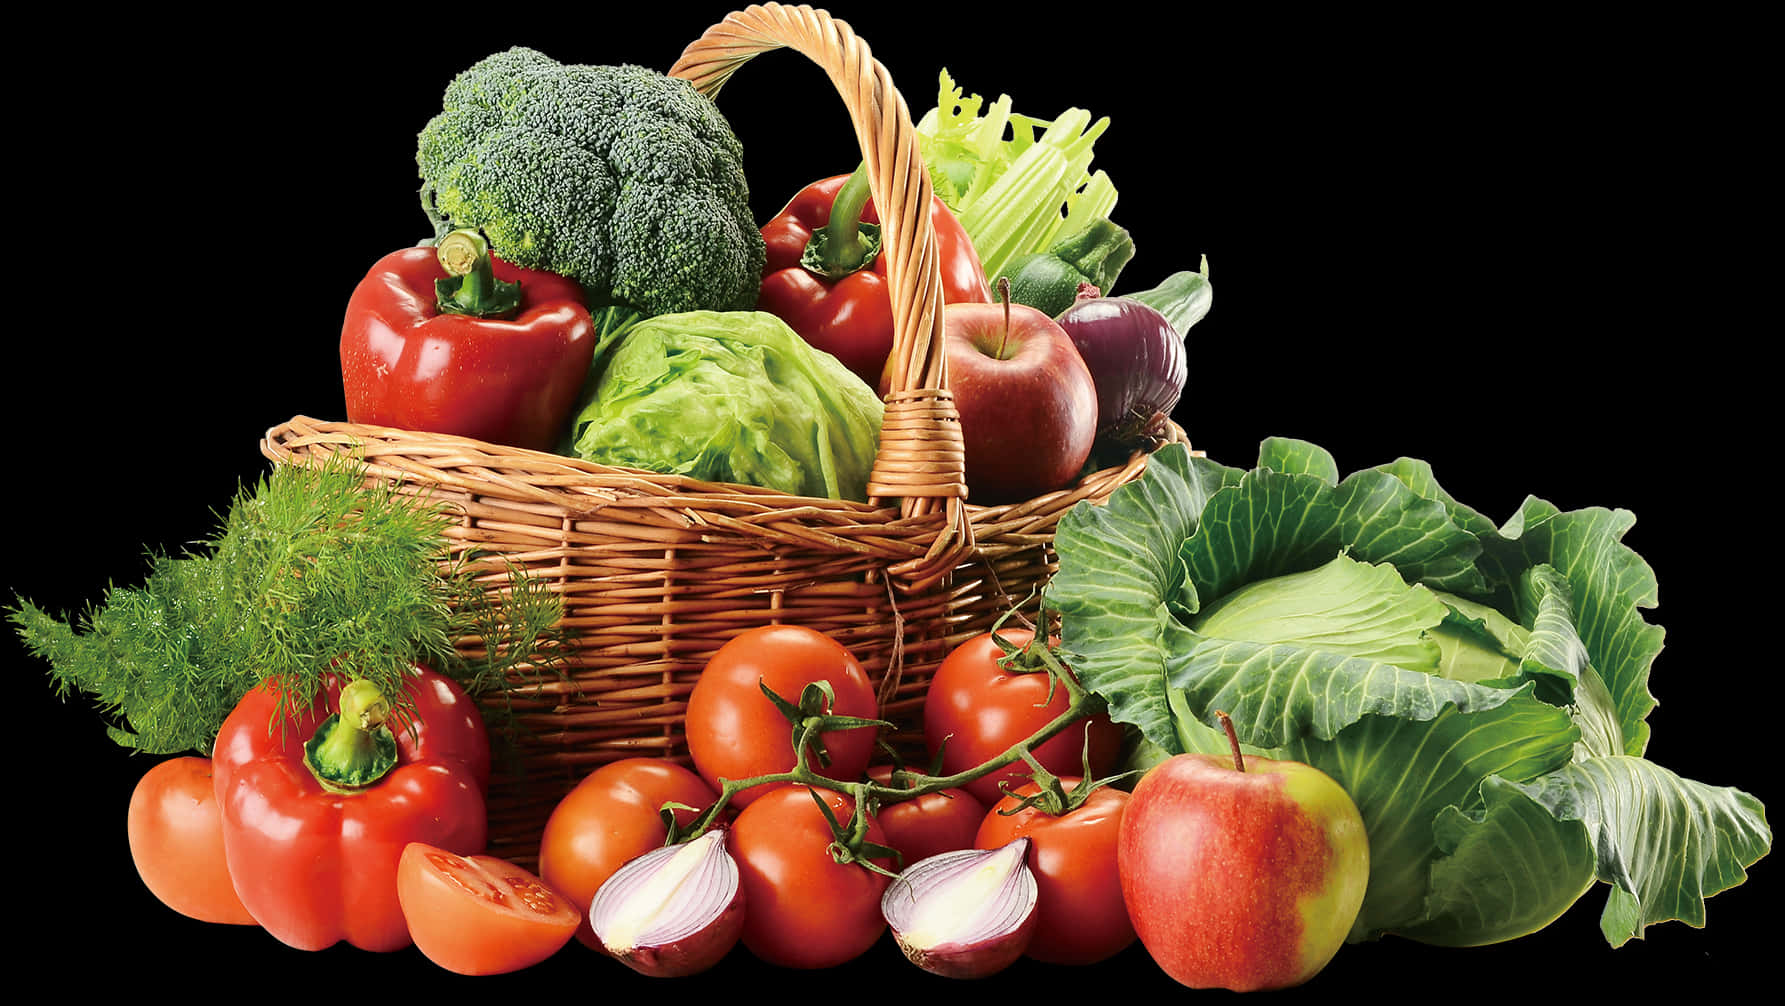 Fresh Vegetablesand Fruits Basket PNG